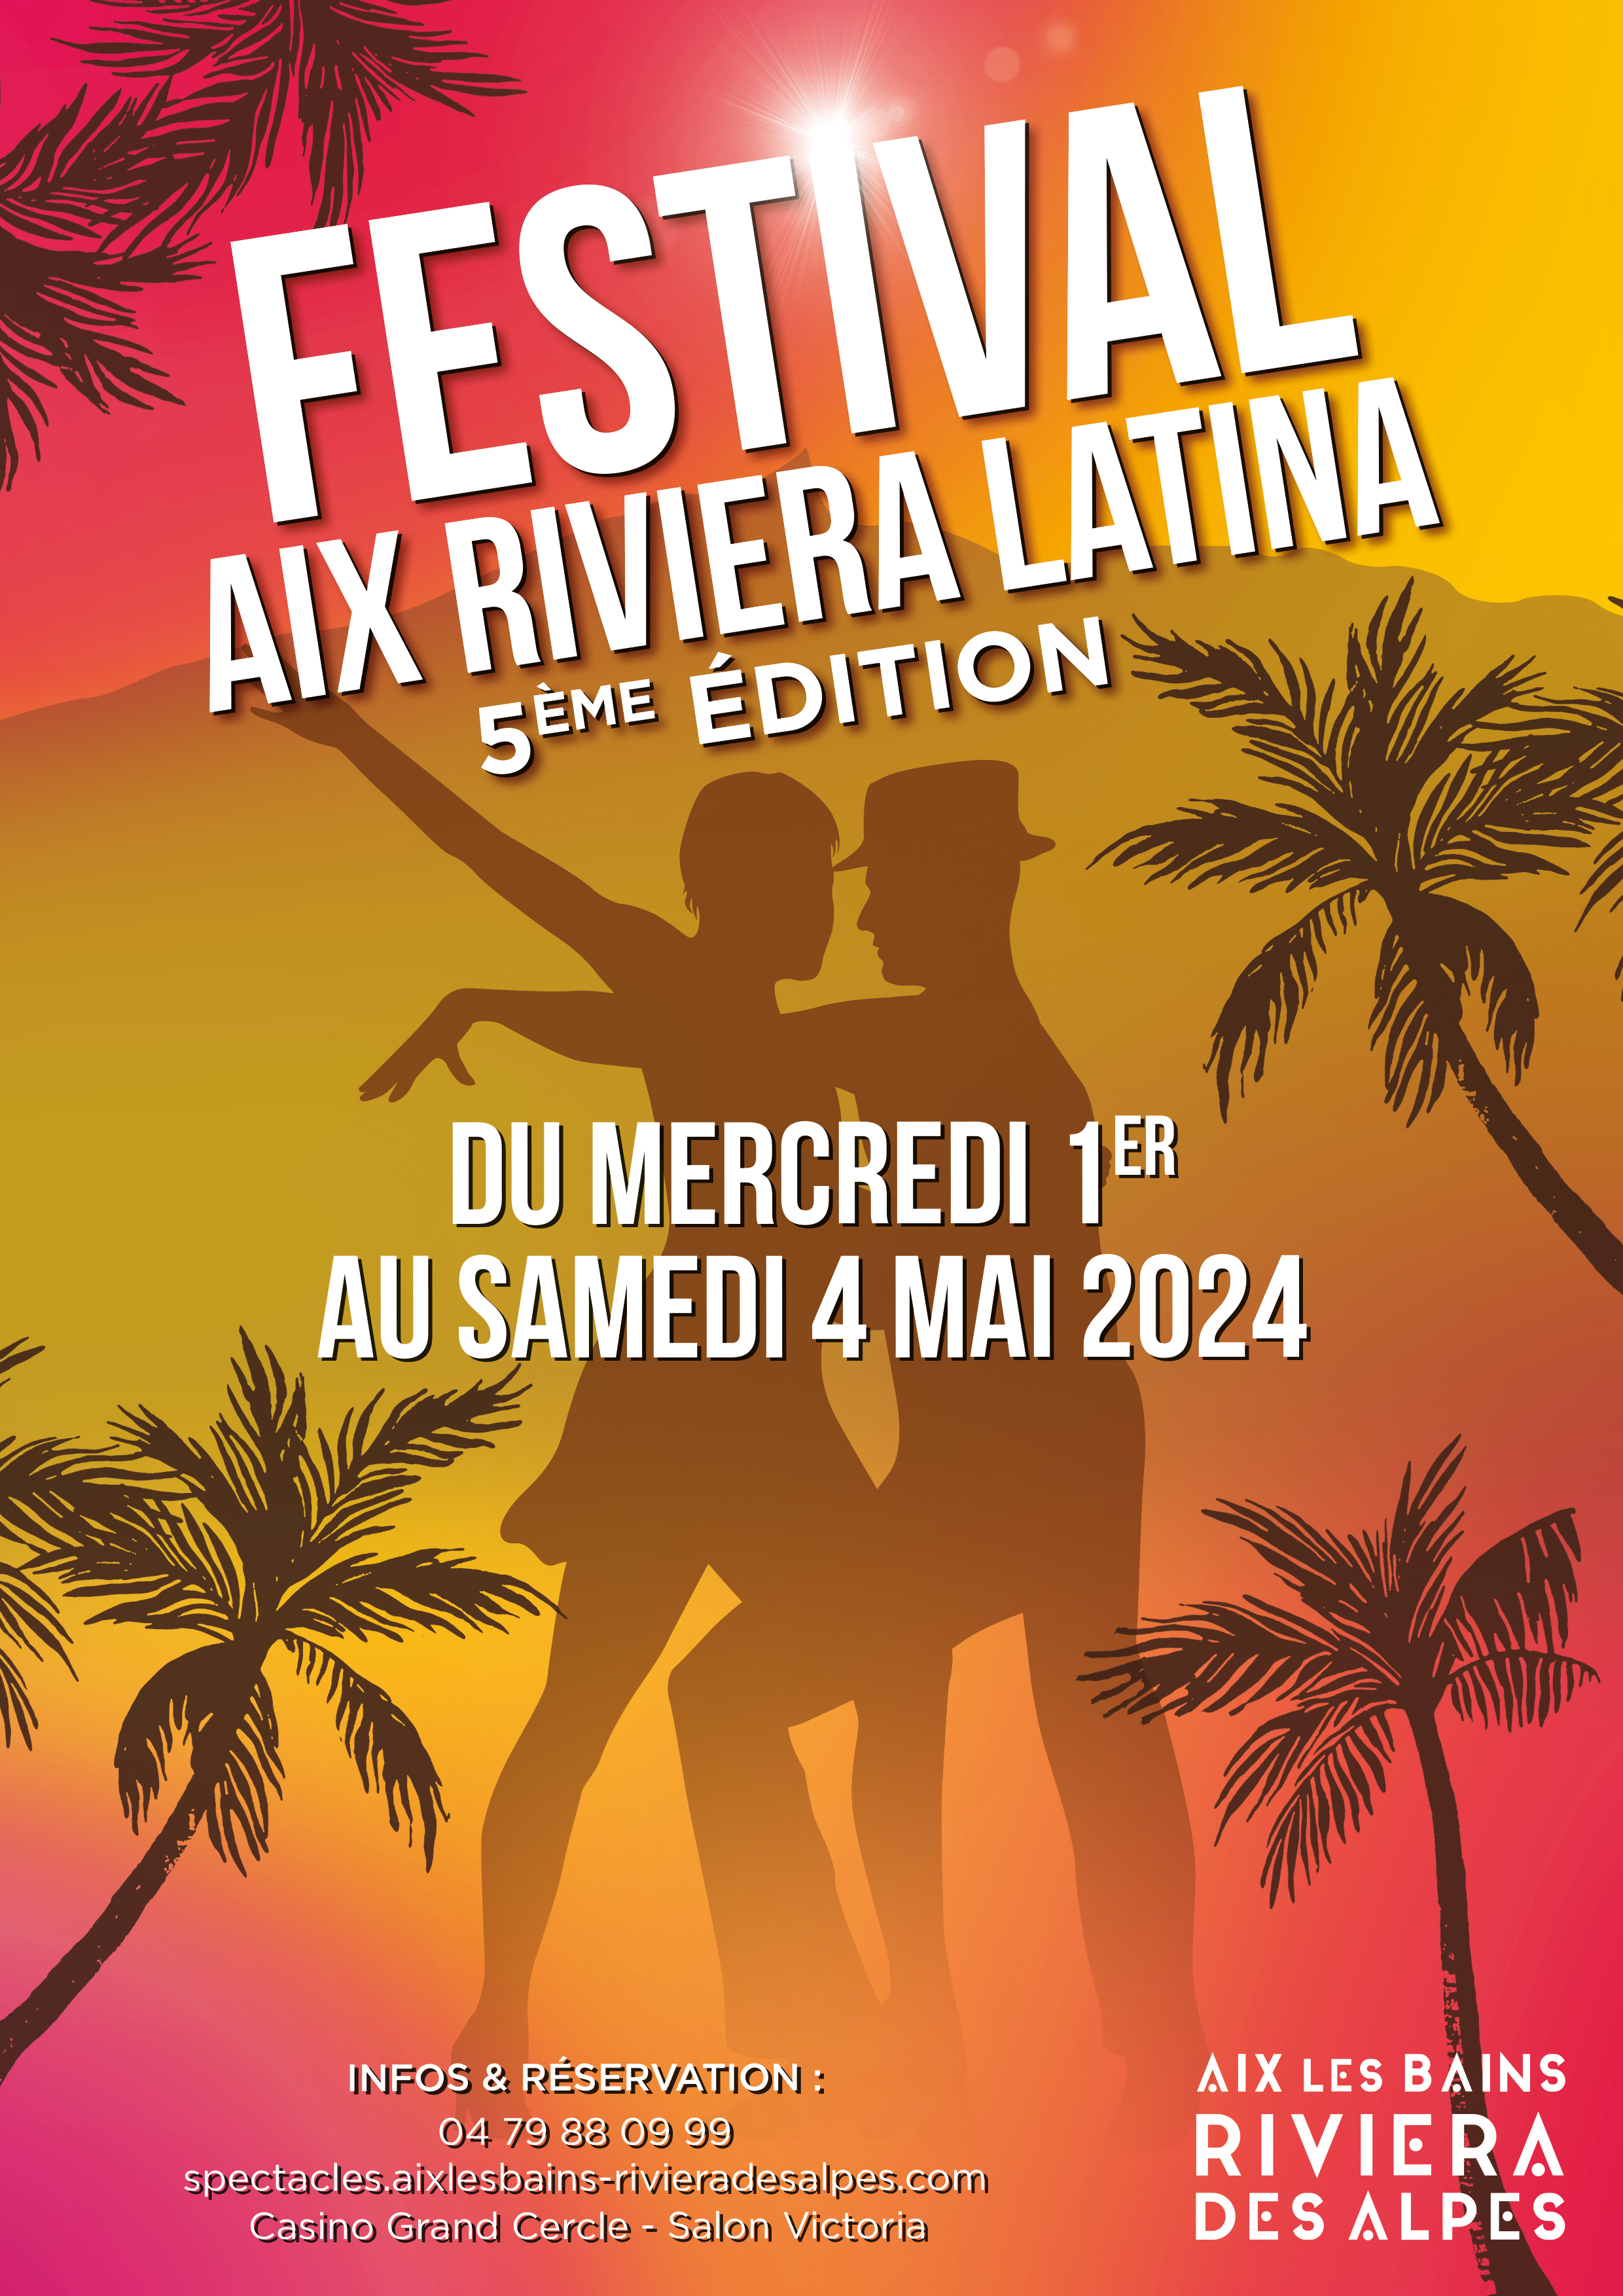 Festival Aix Riviera Latina - 5ème édition